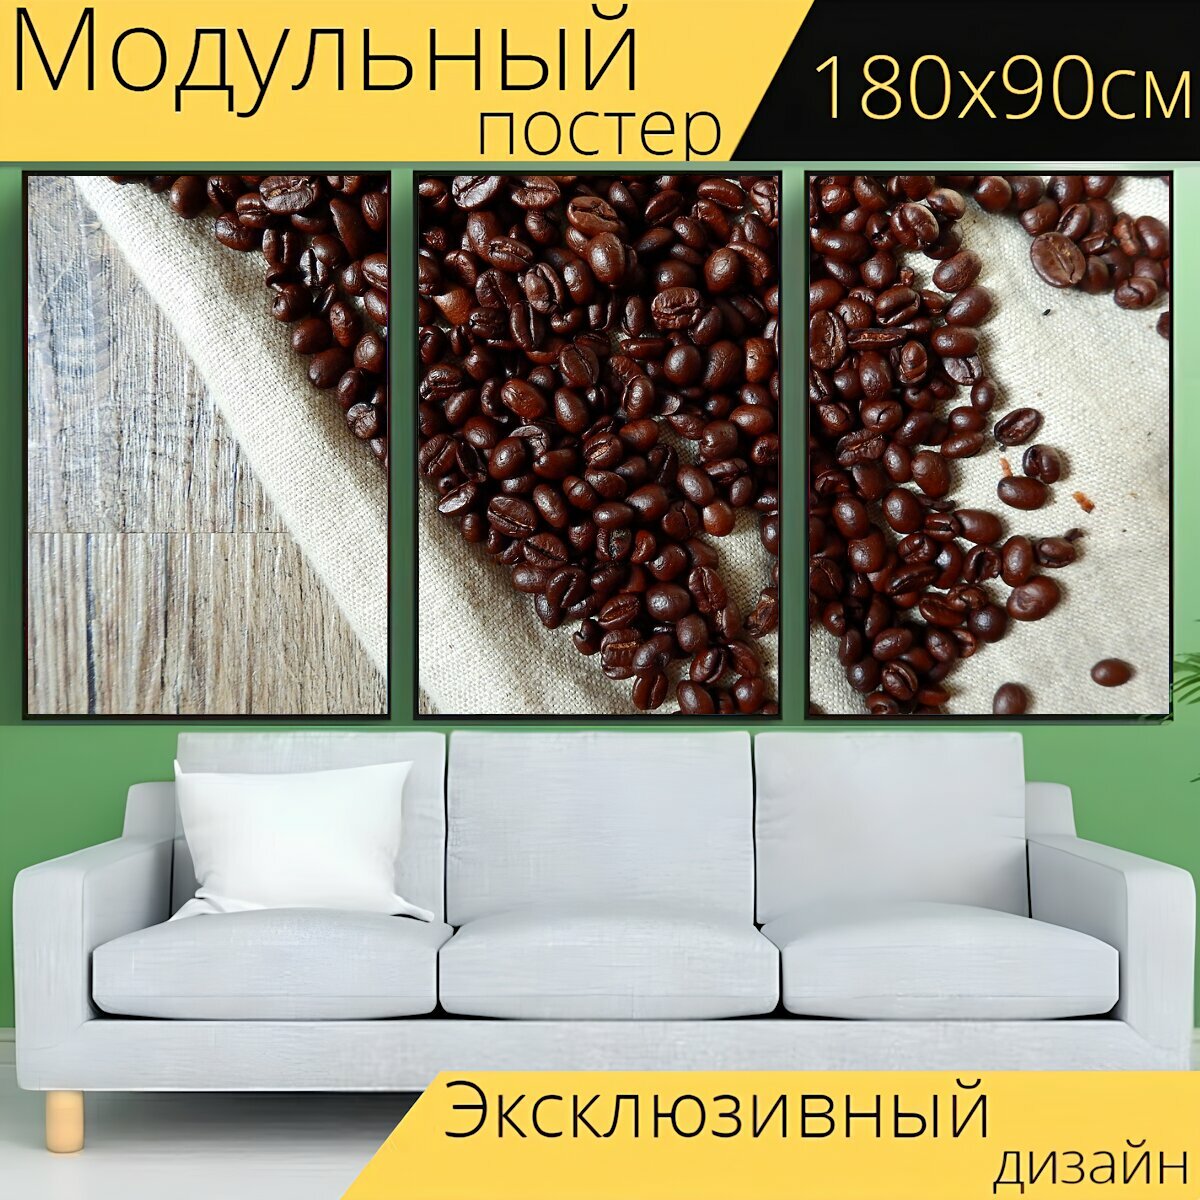 Модульный постер "Кофе, кофейные зерна, бобы" 180 x 90 см. для интерьера